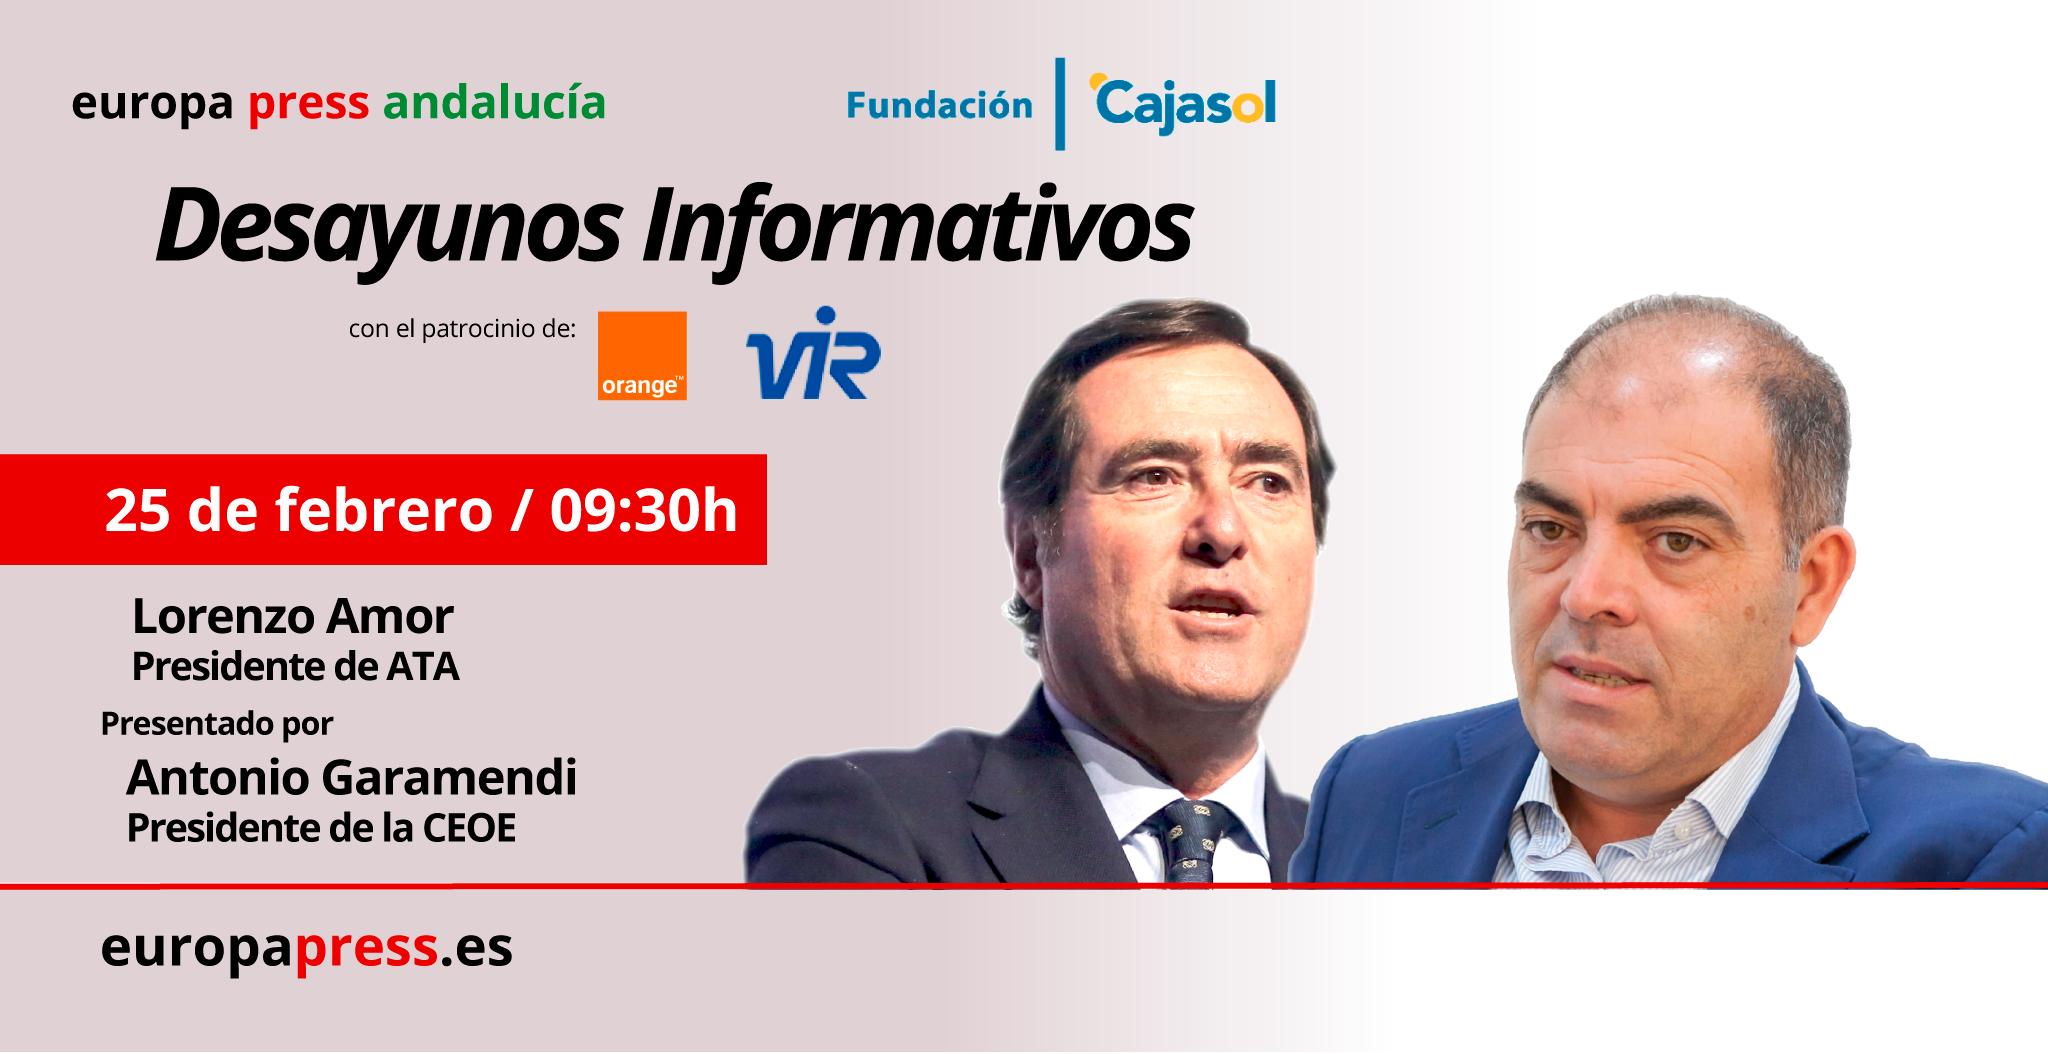 Invitación a los Desayunos Informativos de Europa Press Andalucía con Lorenzo Amor en la Fundación Cajasol